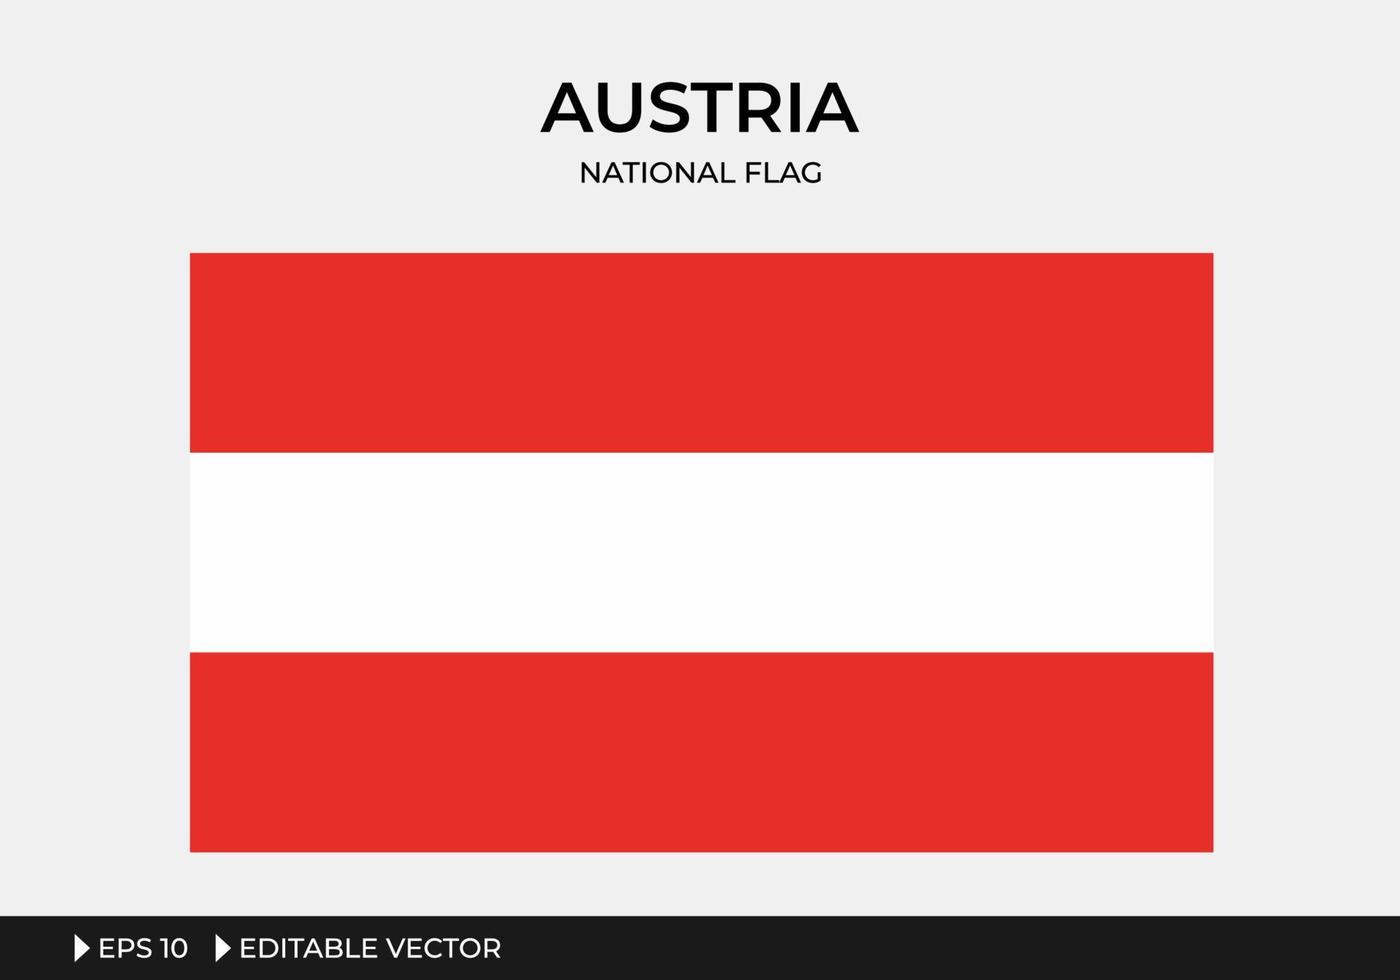 Abbildung der österreichischen Nationalflagge vektor